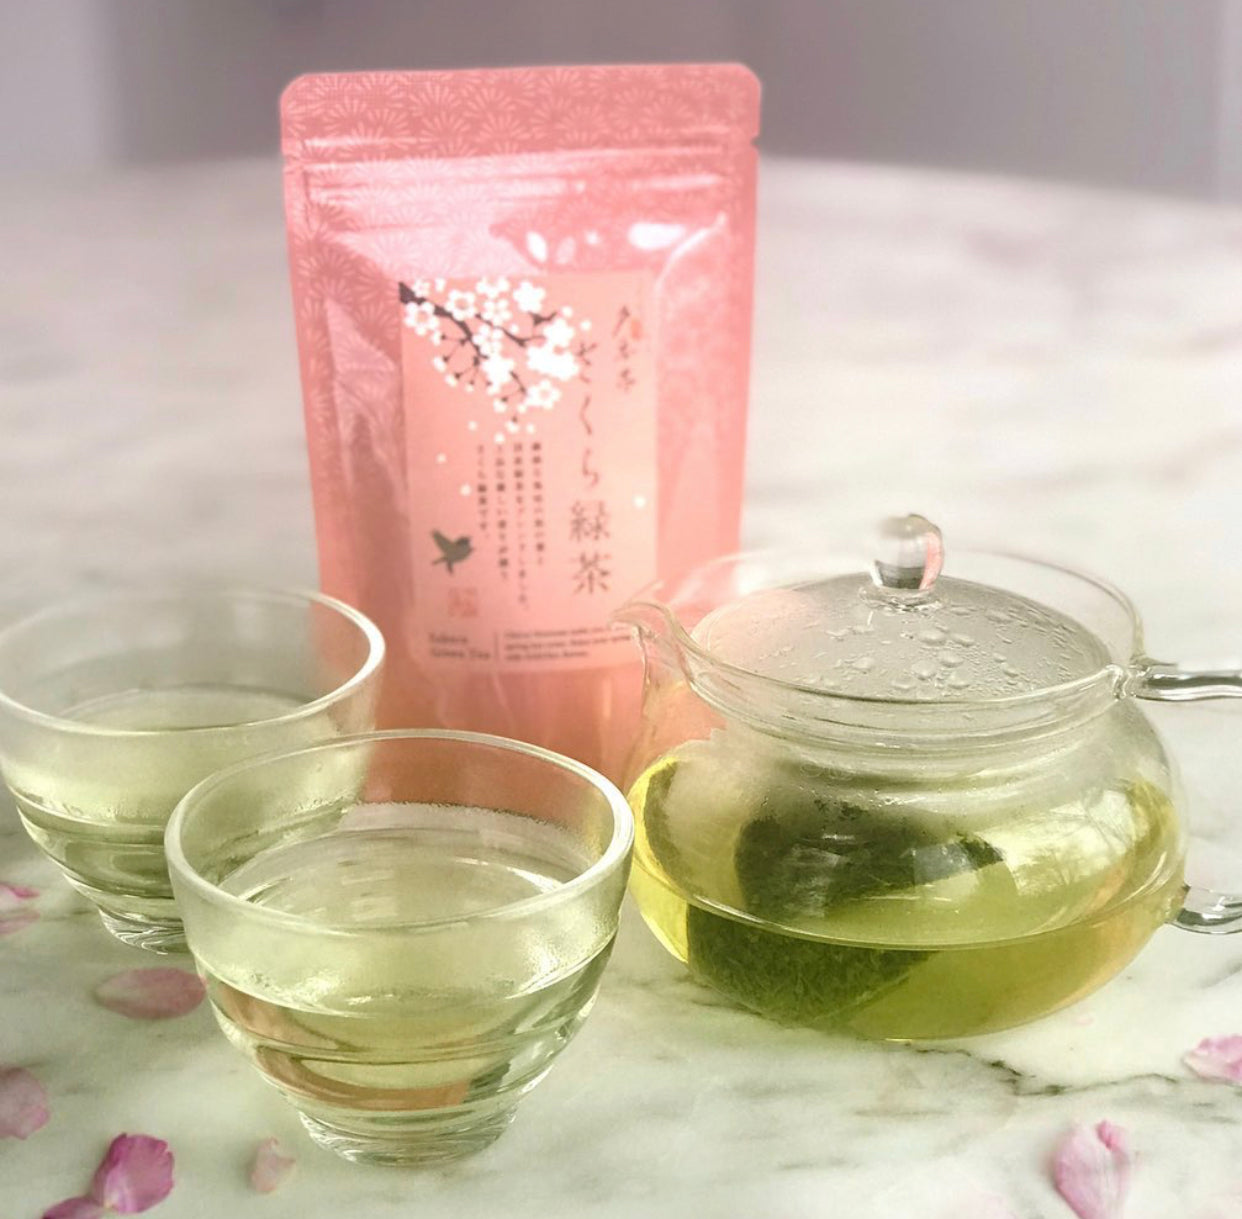 Sakura Green Tea (Teabags)